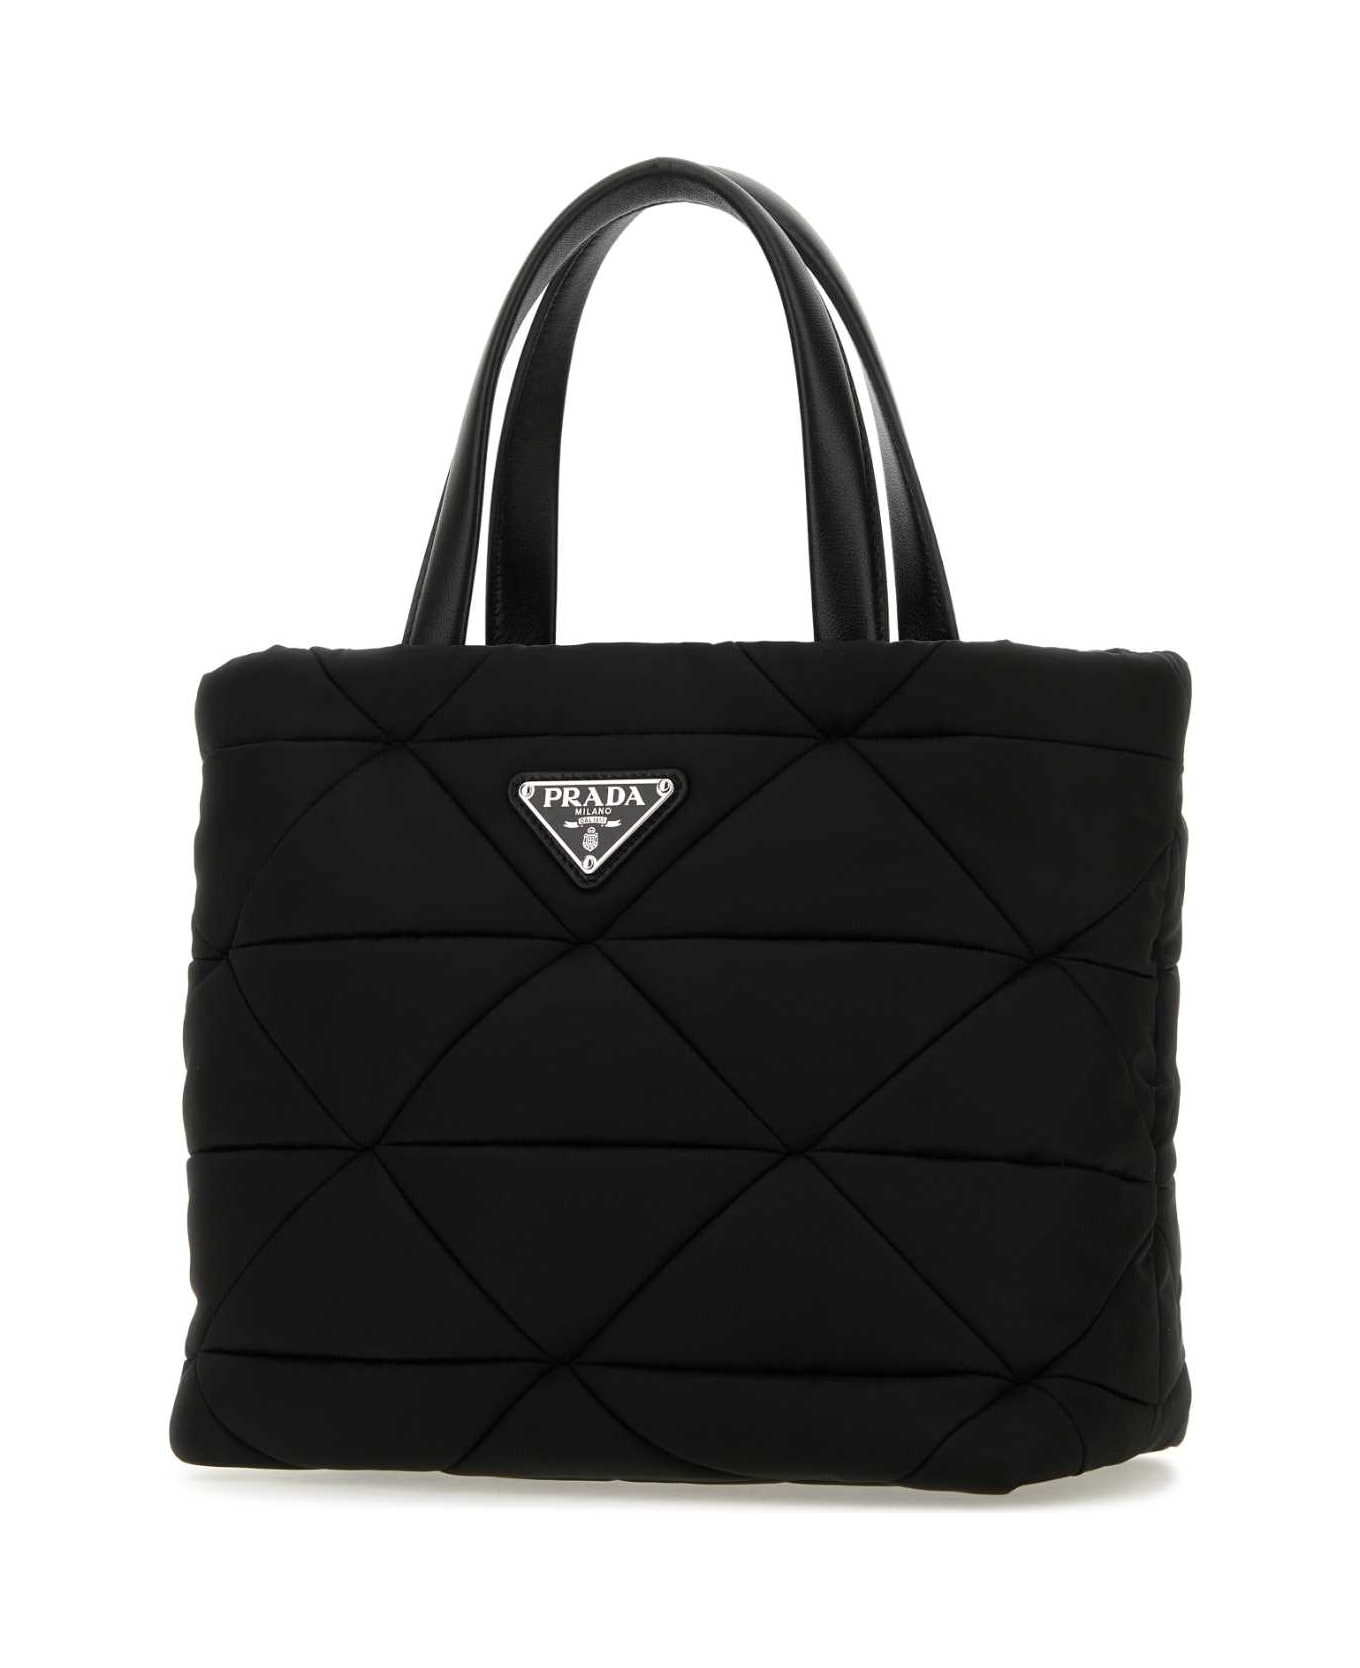 Prada Black Re-nylon Handbag - Black